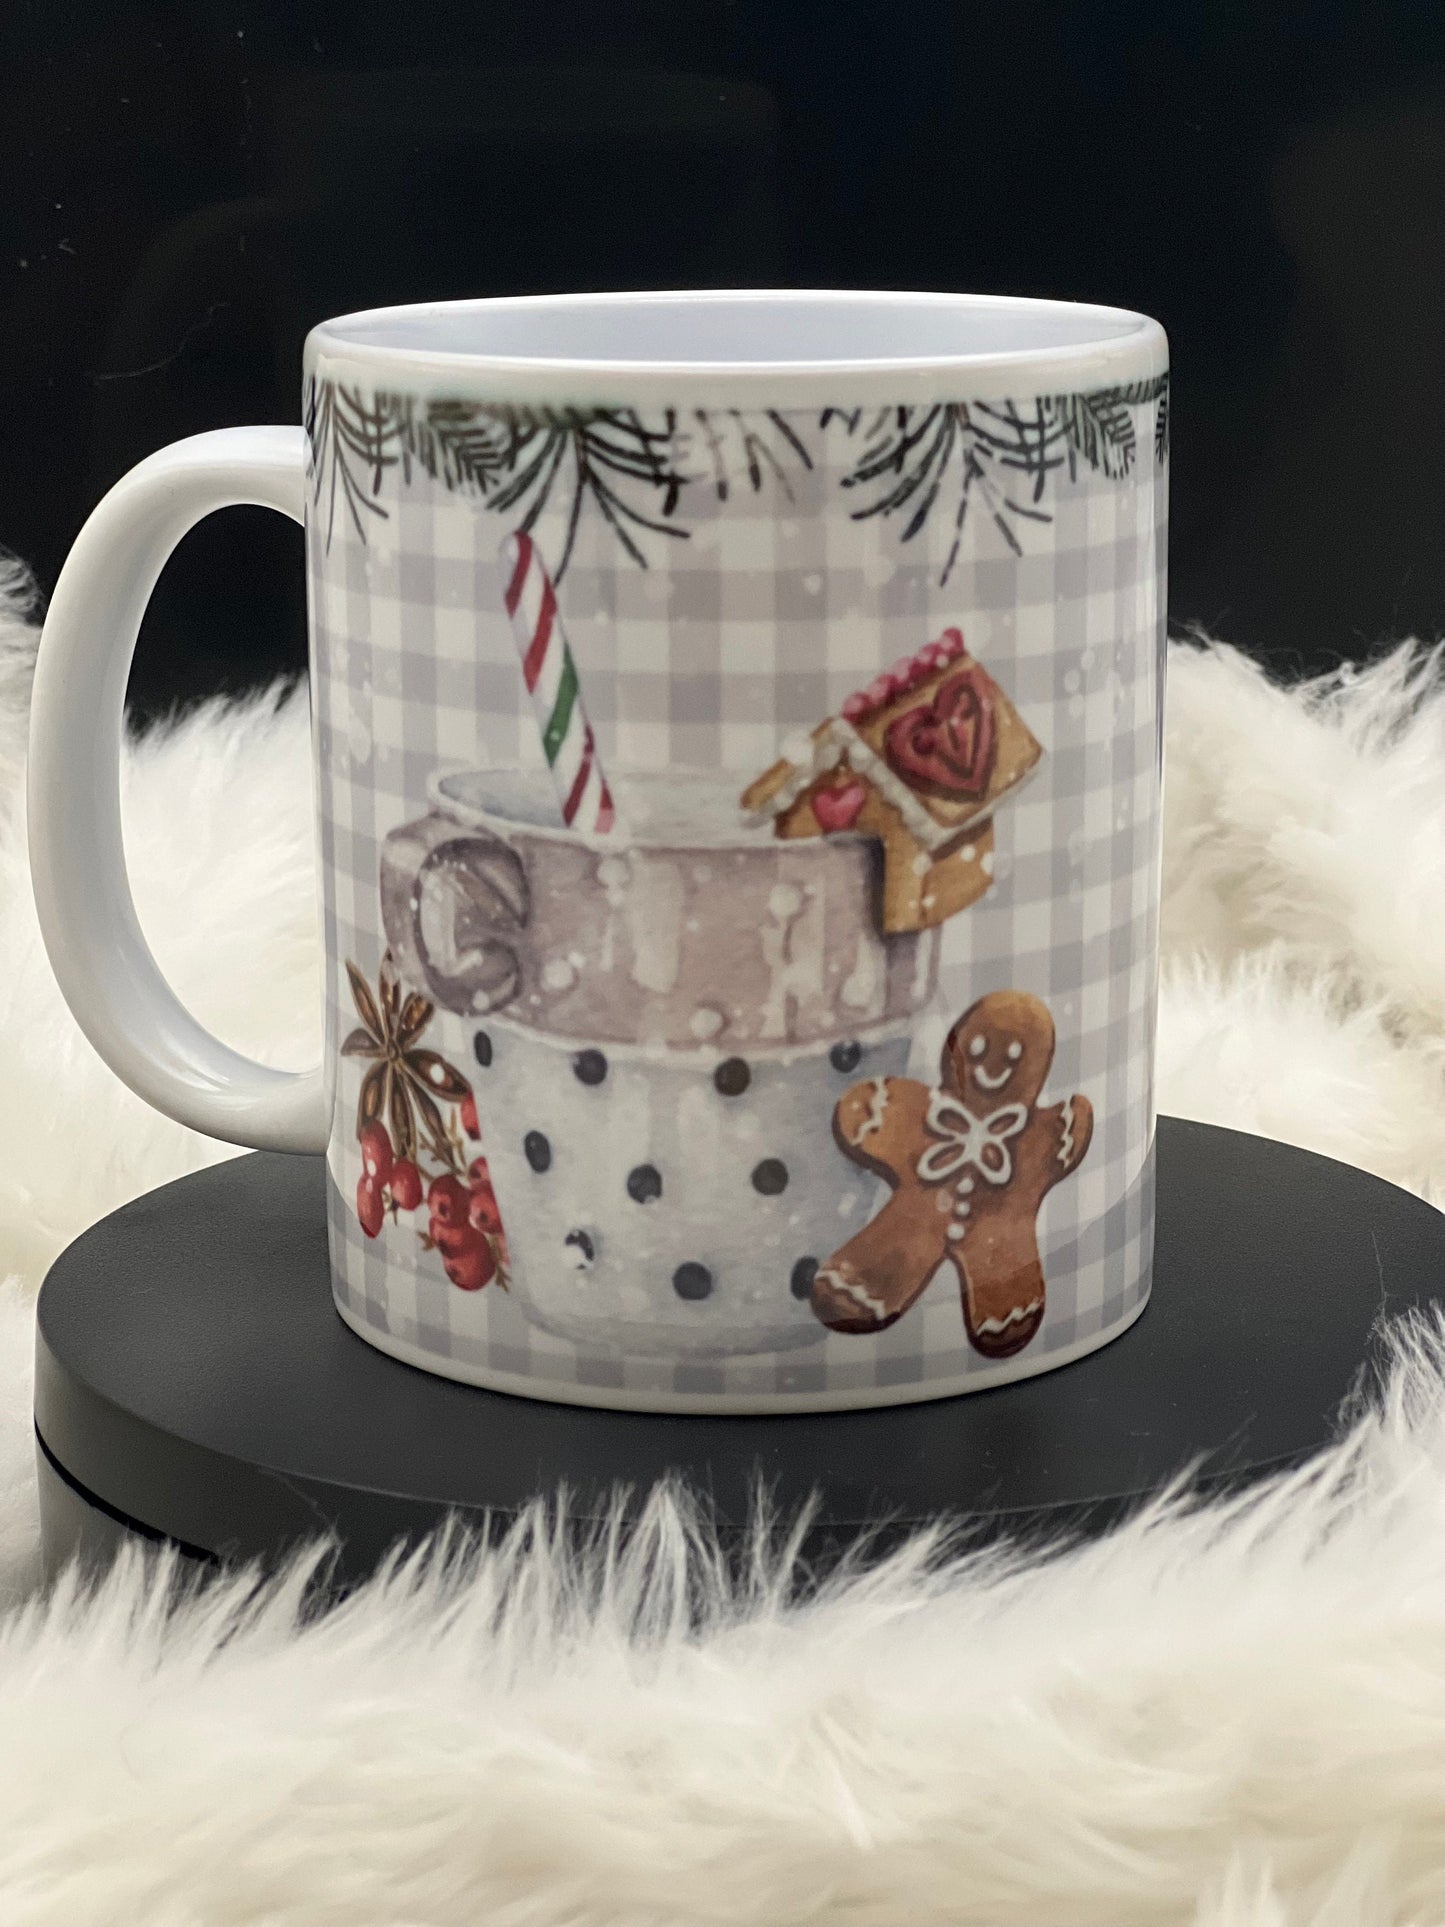 Merry Christmas wishes mug